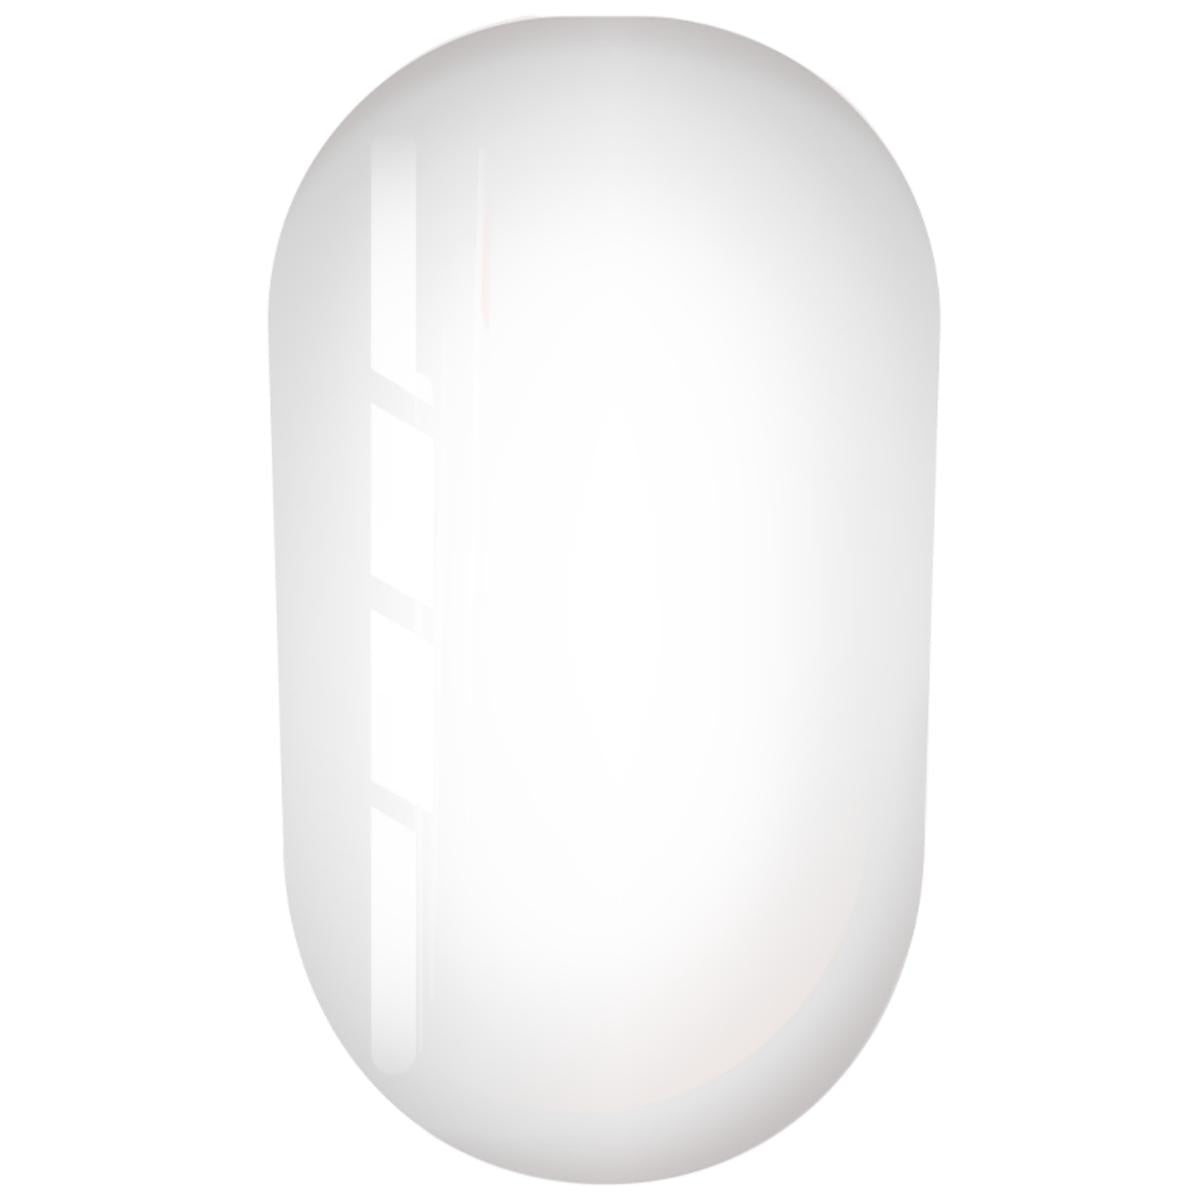 Fiber Base Eustoma Trendy Nails base semipermanente autmodellante con fibra di vetro per ricostruzione unghie senza limatura. Massima adesione sulle unghie. Contiene Calcio e Vitamina E.